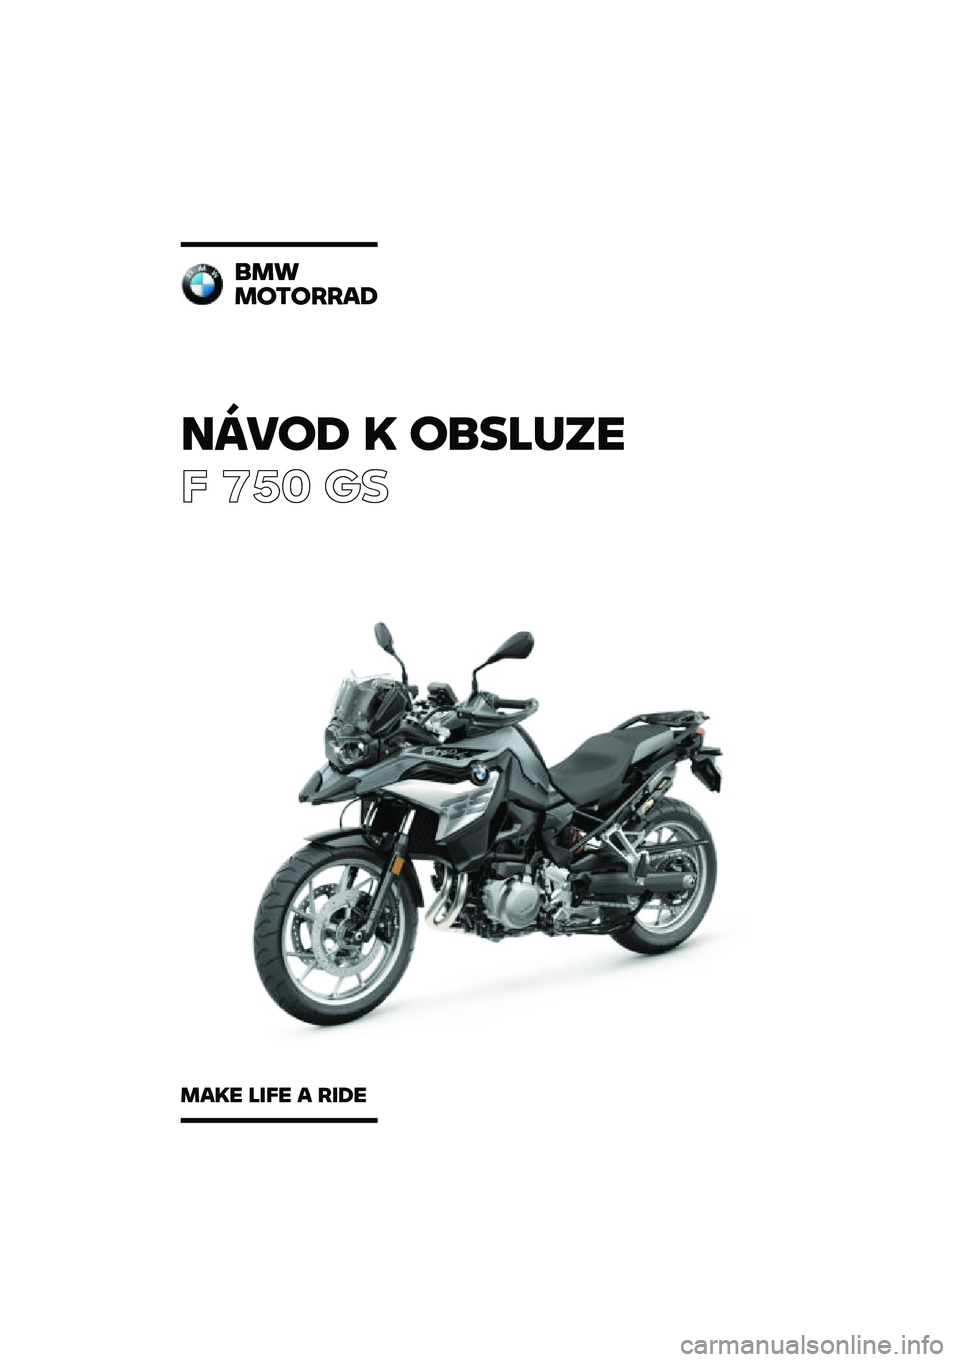 BMW MOTORRAD F 750 GS 2020  Návod k obsluze (in Czech) �����\b �	 ��
��\f�
��
� ��� �\b�	
�
��
��������\b
���	� �\f��� � ���\b� 